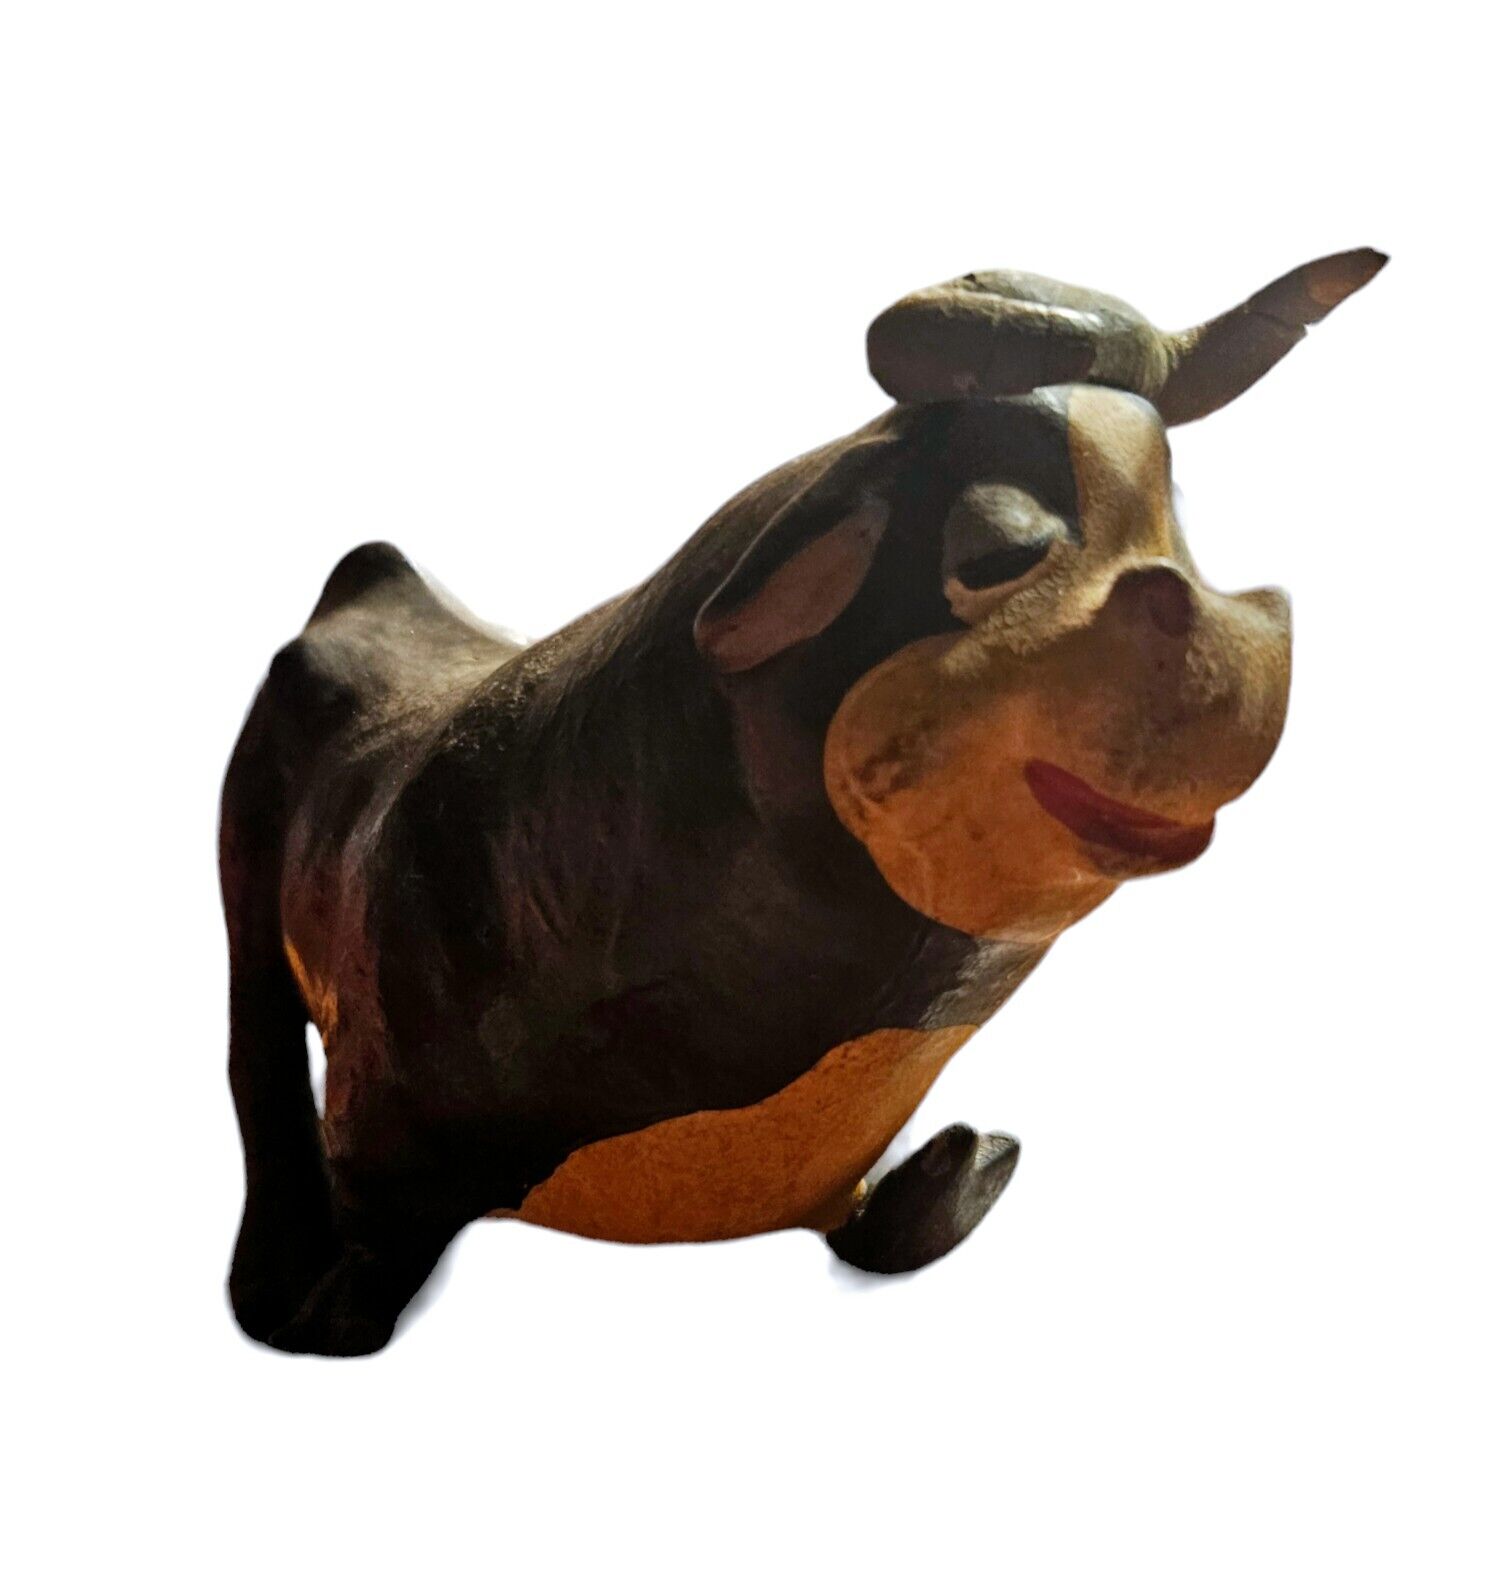 1930's Sieberling Rubber Ty Ferdinand The Bull Figure Toy Disney